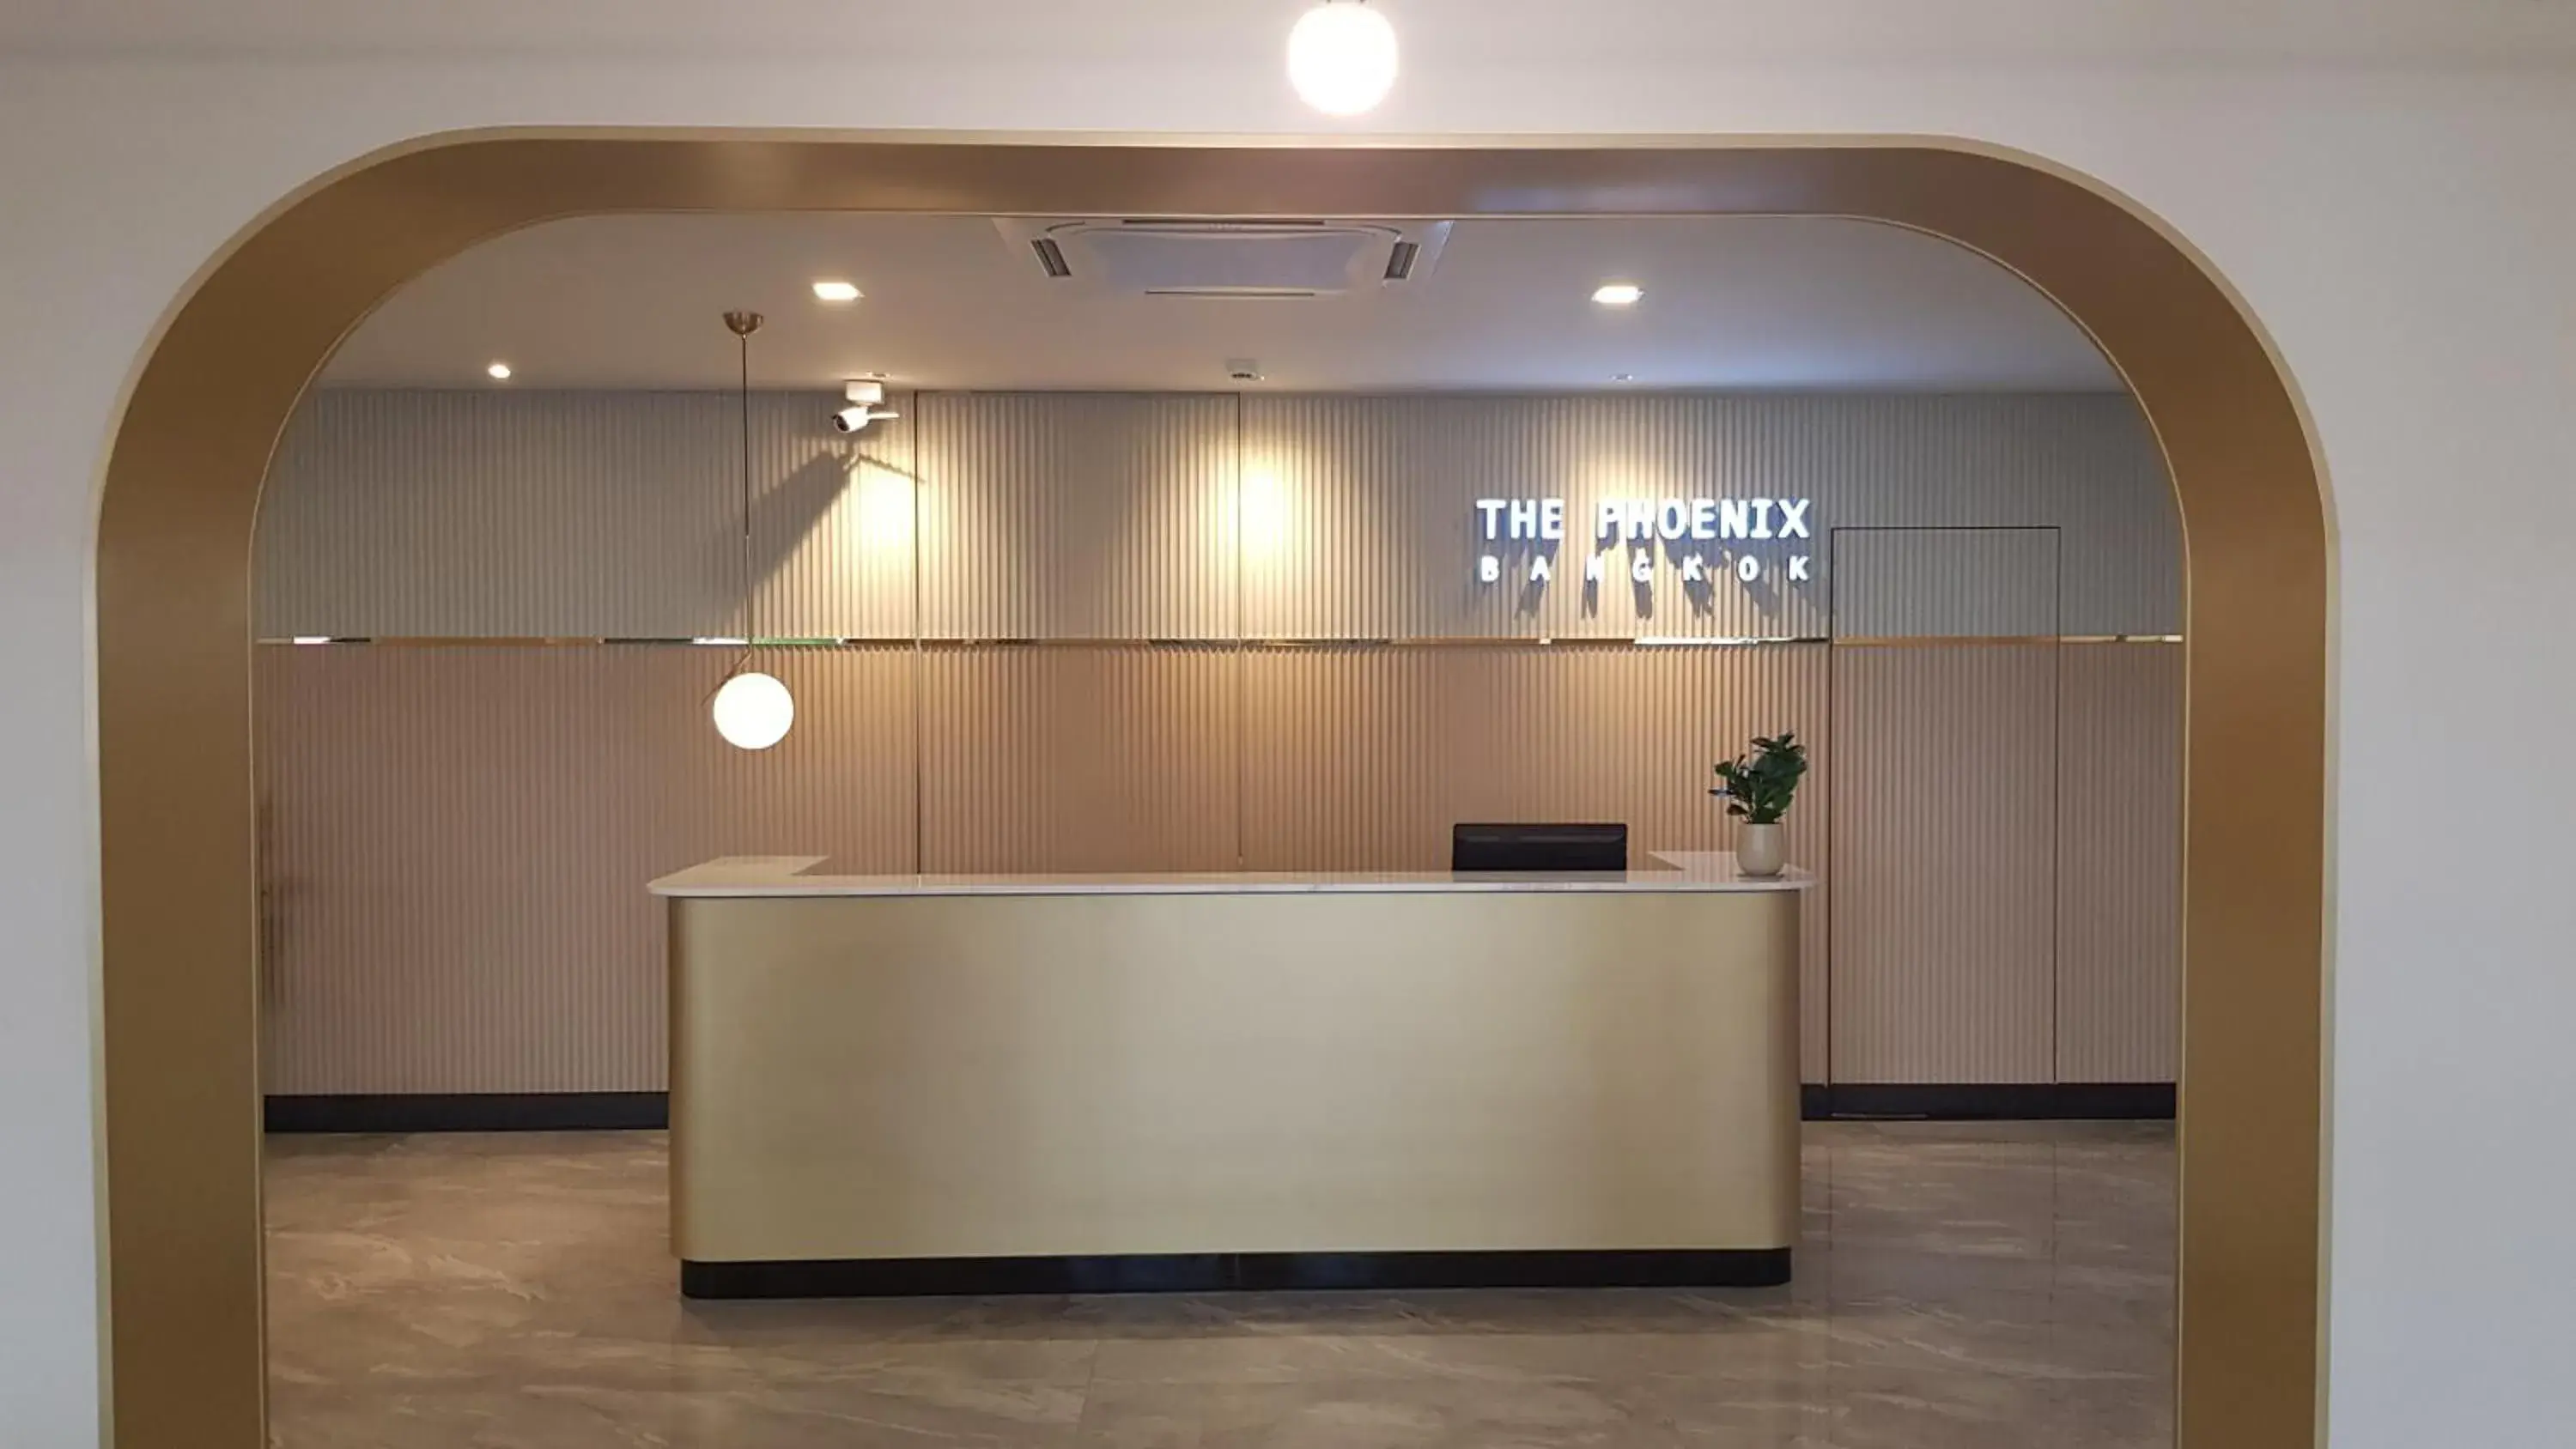 Lobby or reception, Lobby/Reception in The Phoenix Hotel Bangkok - Suvarnabhumi Airport